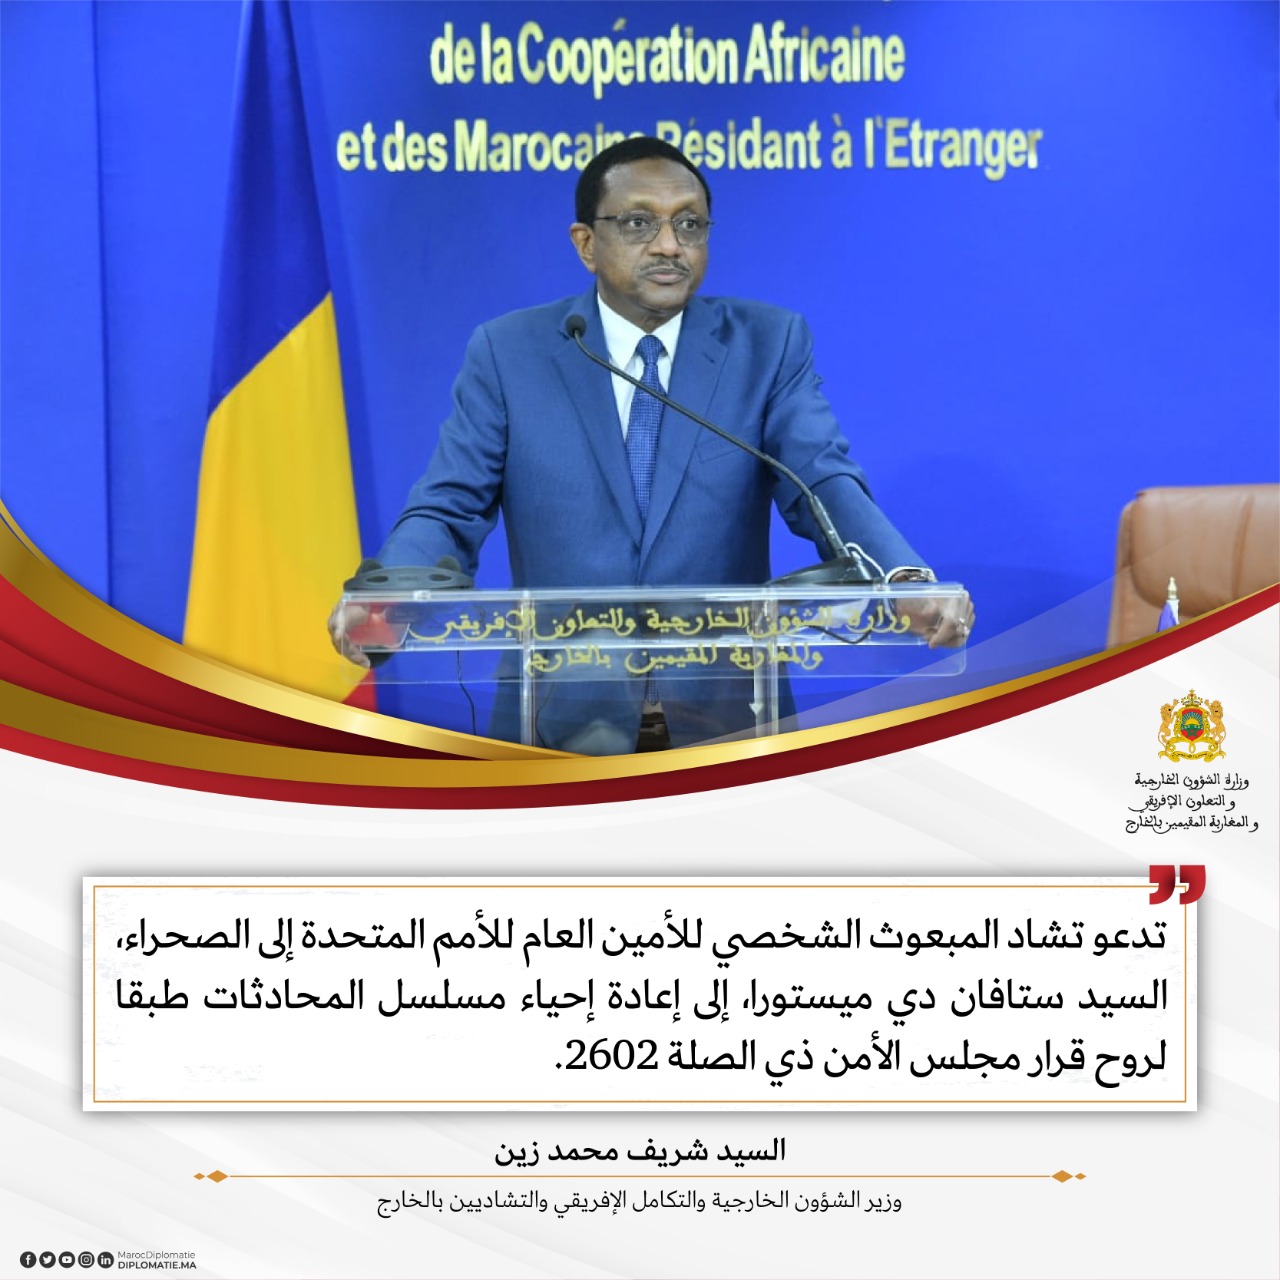 تصريح للسيد شريف محمد زين، وزير الشؤون الخارجية والتكامل الإفريقي والتشاديين بالخارج.